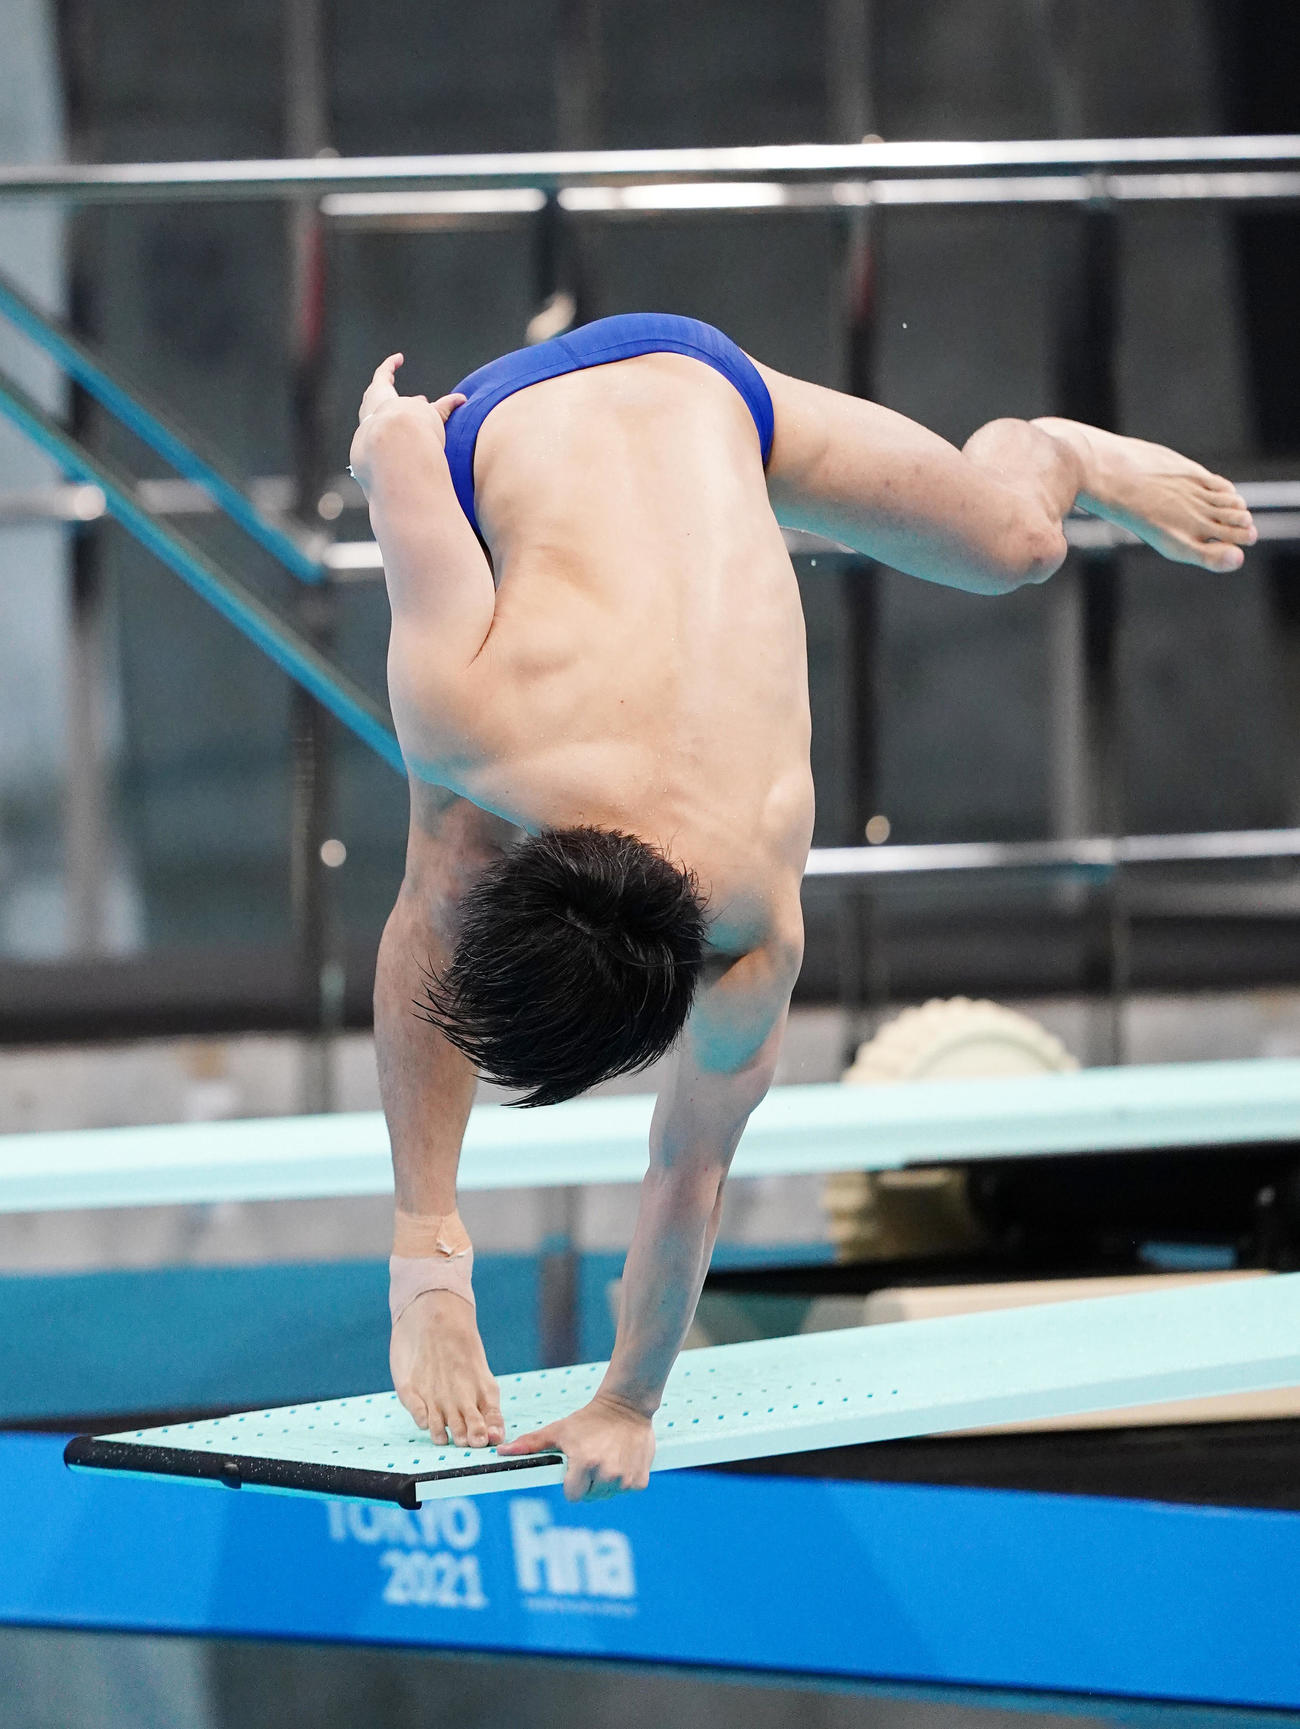 伊藤洸輝 人生初 板から落下し０点 飛び出す直前バランス崩し頭から水に 水泳 東京オリンピック写真ニュース 日刊スポーツ